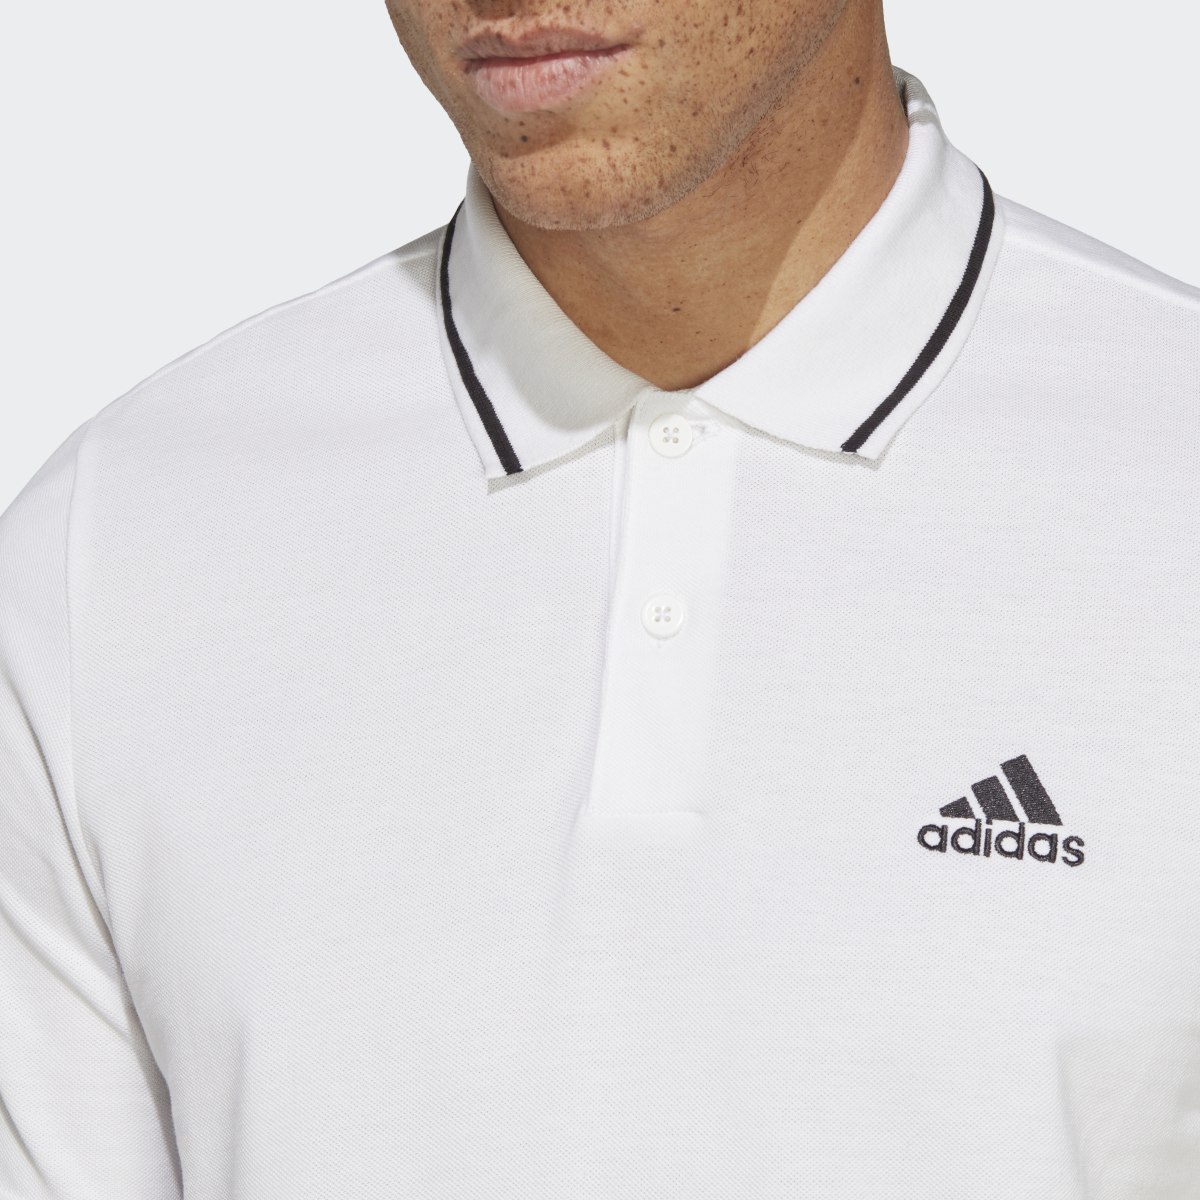 Adidas Essentials Piqué Small Logo Polo Shirt. 6